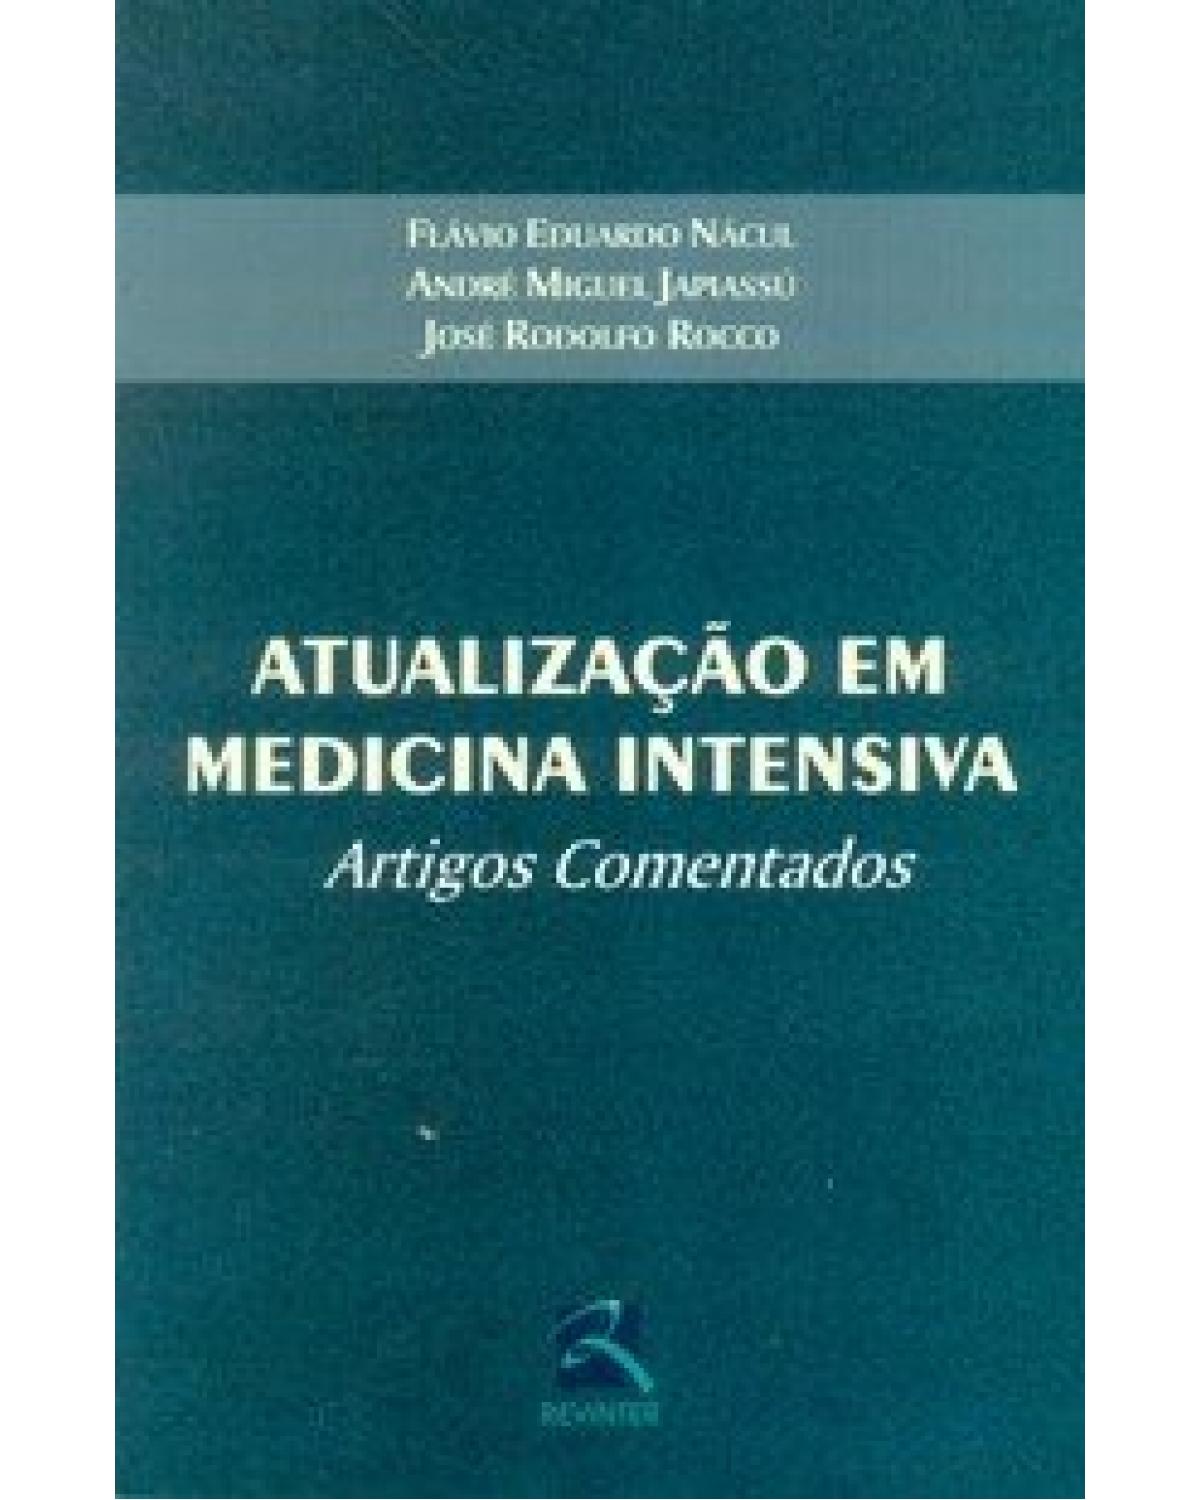 Atualização em medicina intensiva - artigos comentados - 1ª Edição | 2004